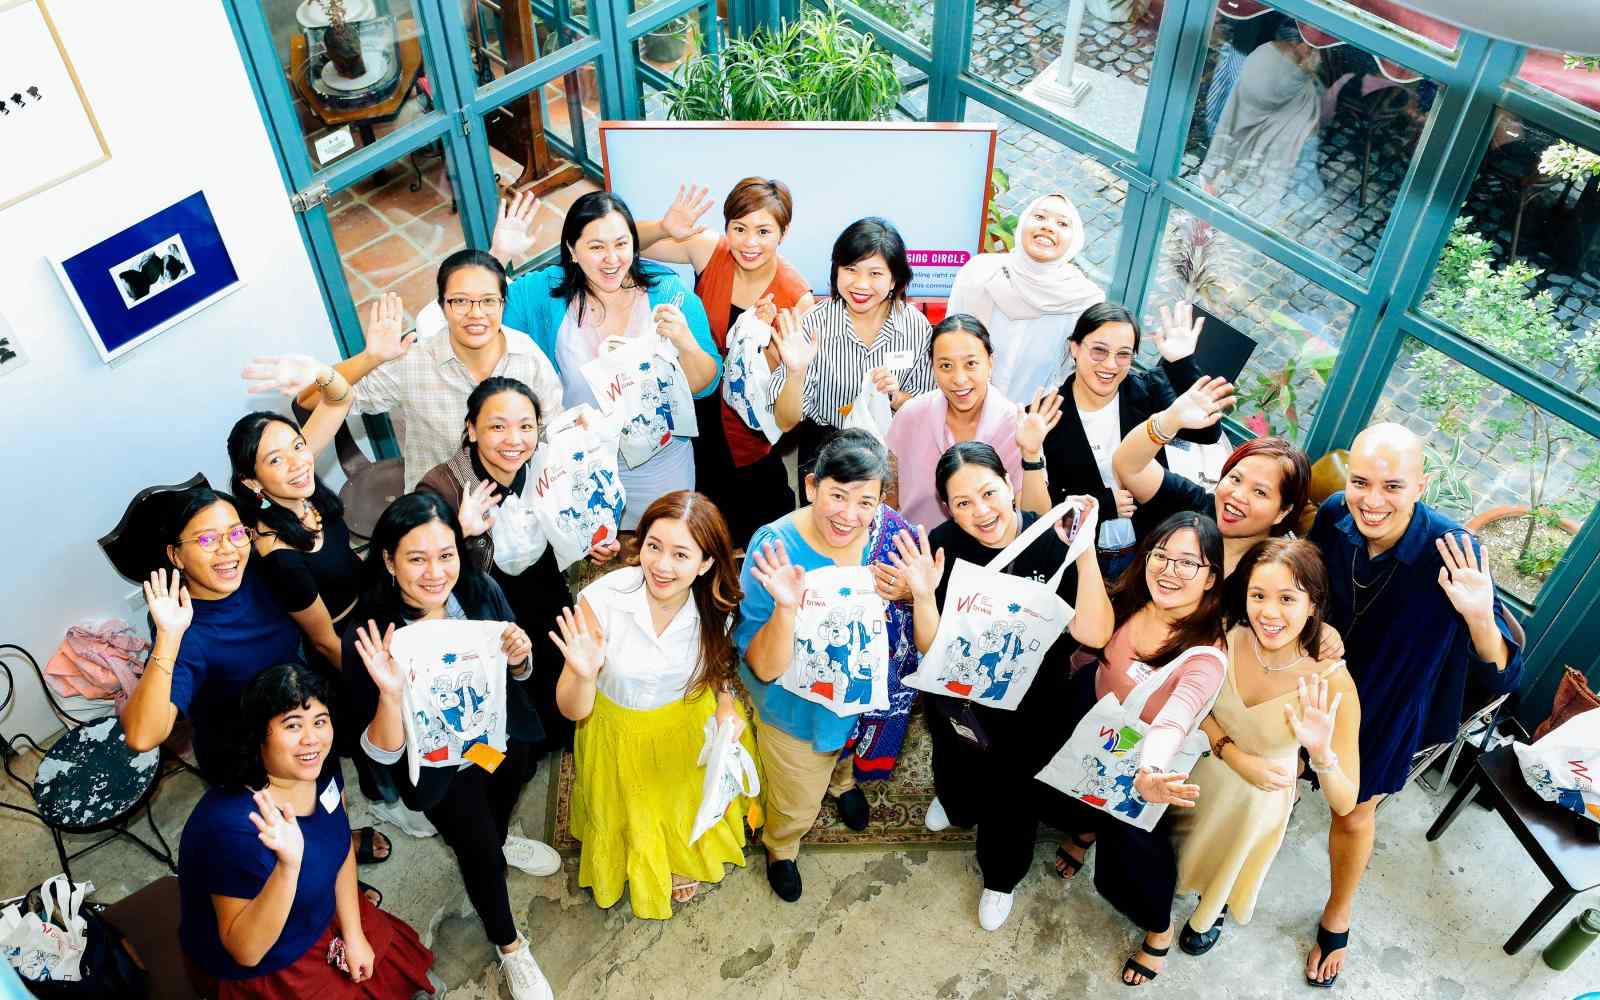 A group of Filipina women waving at the camera